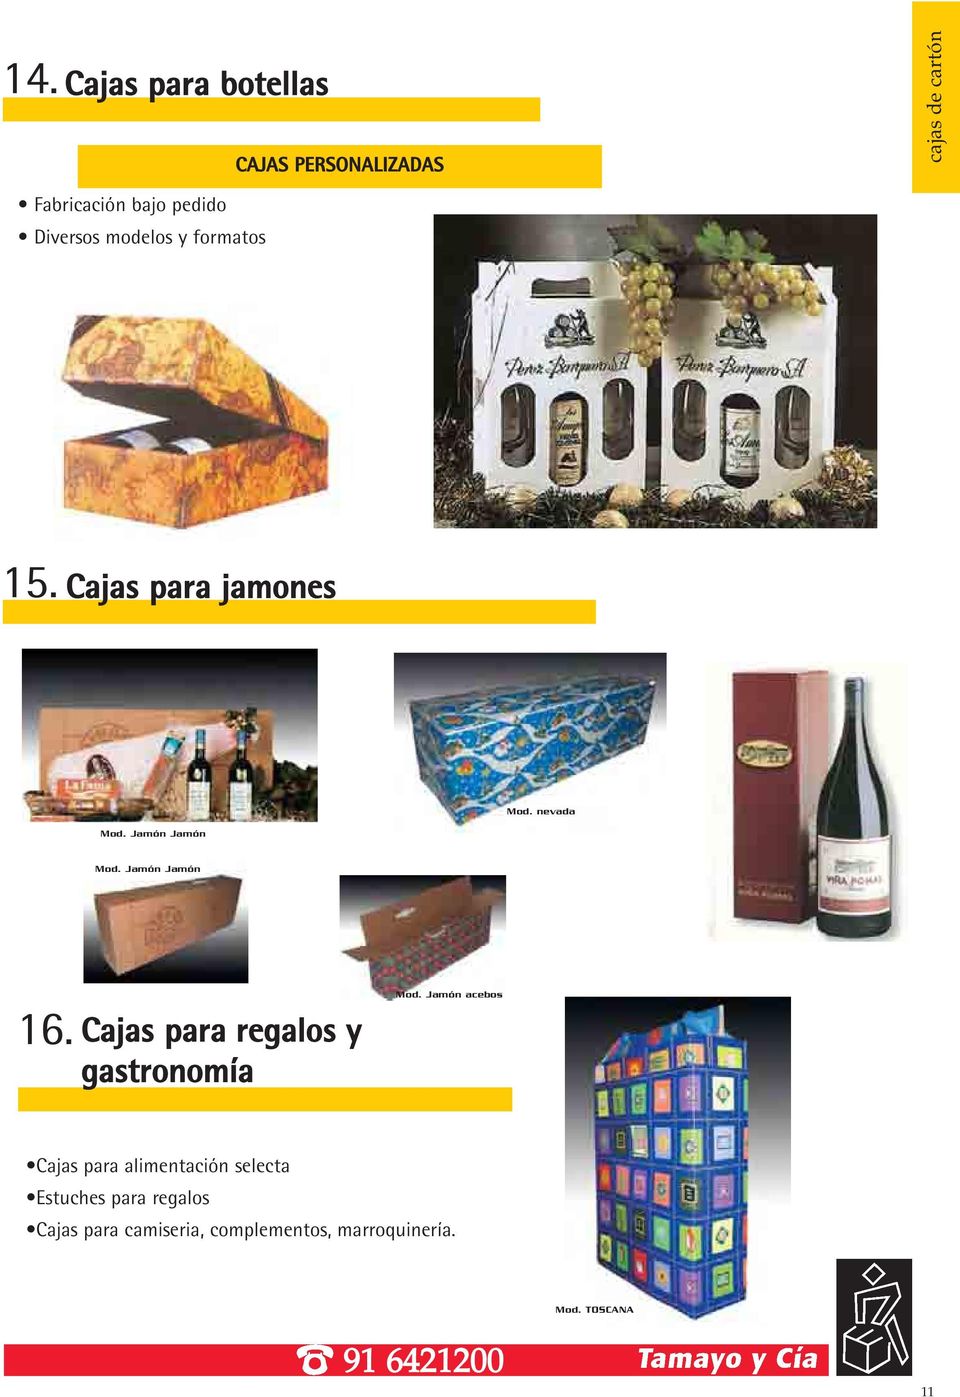 Jamón Jamón 16. Cajas para regalos y gastronomía Mod.